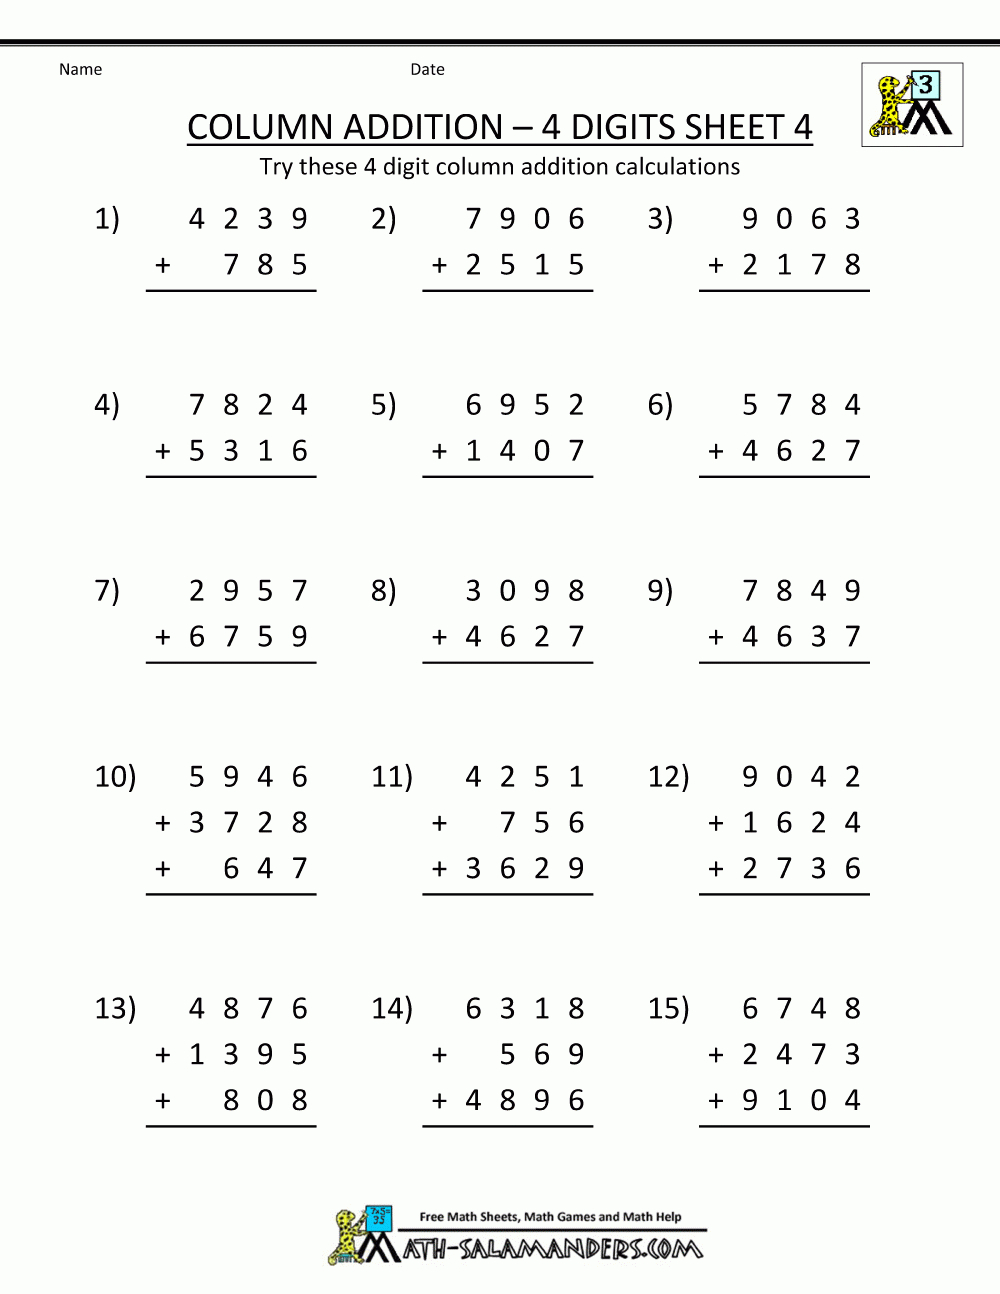 Free Math Worksheets Year 7 Worksheets Free Printable Printable Worksheets